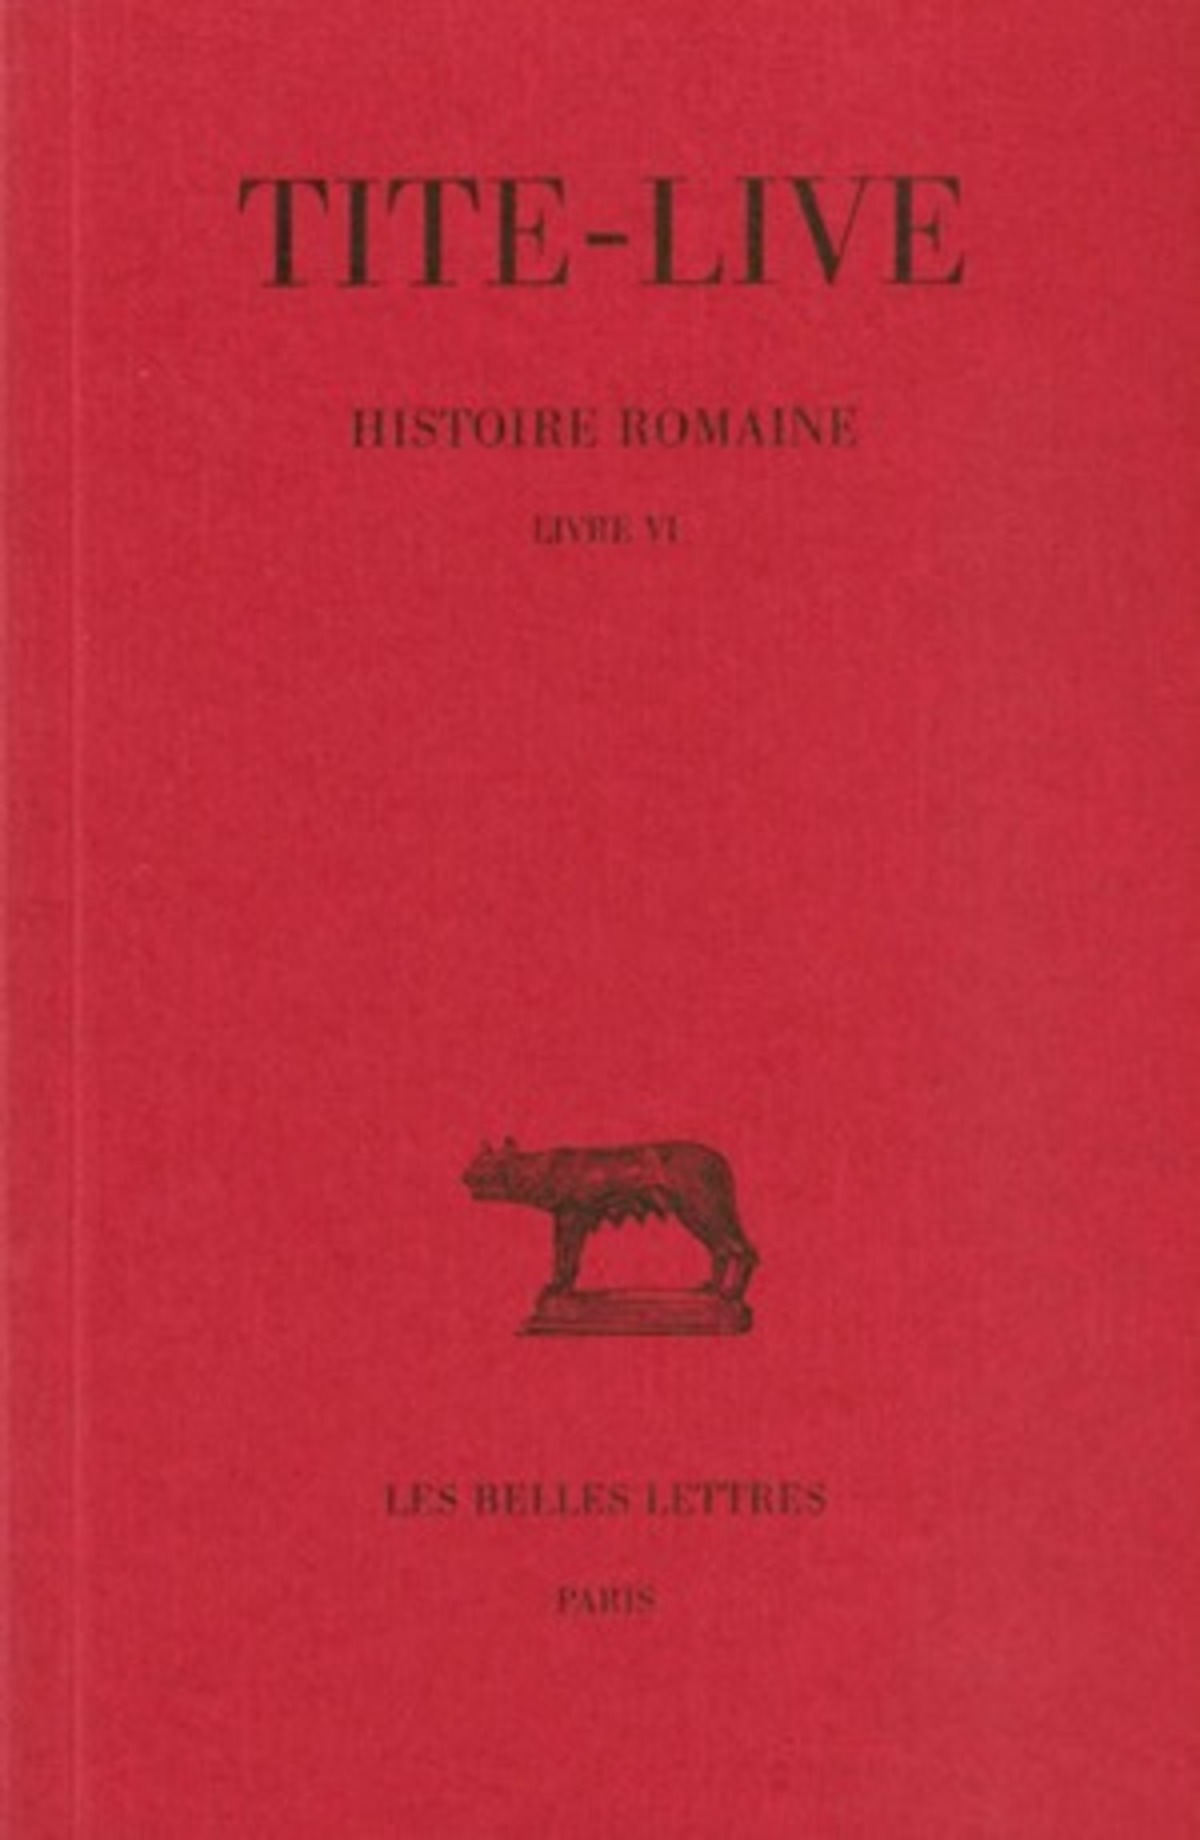 Histoire romaine. Tome VI : Livre VI